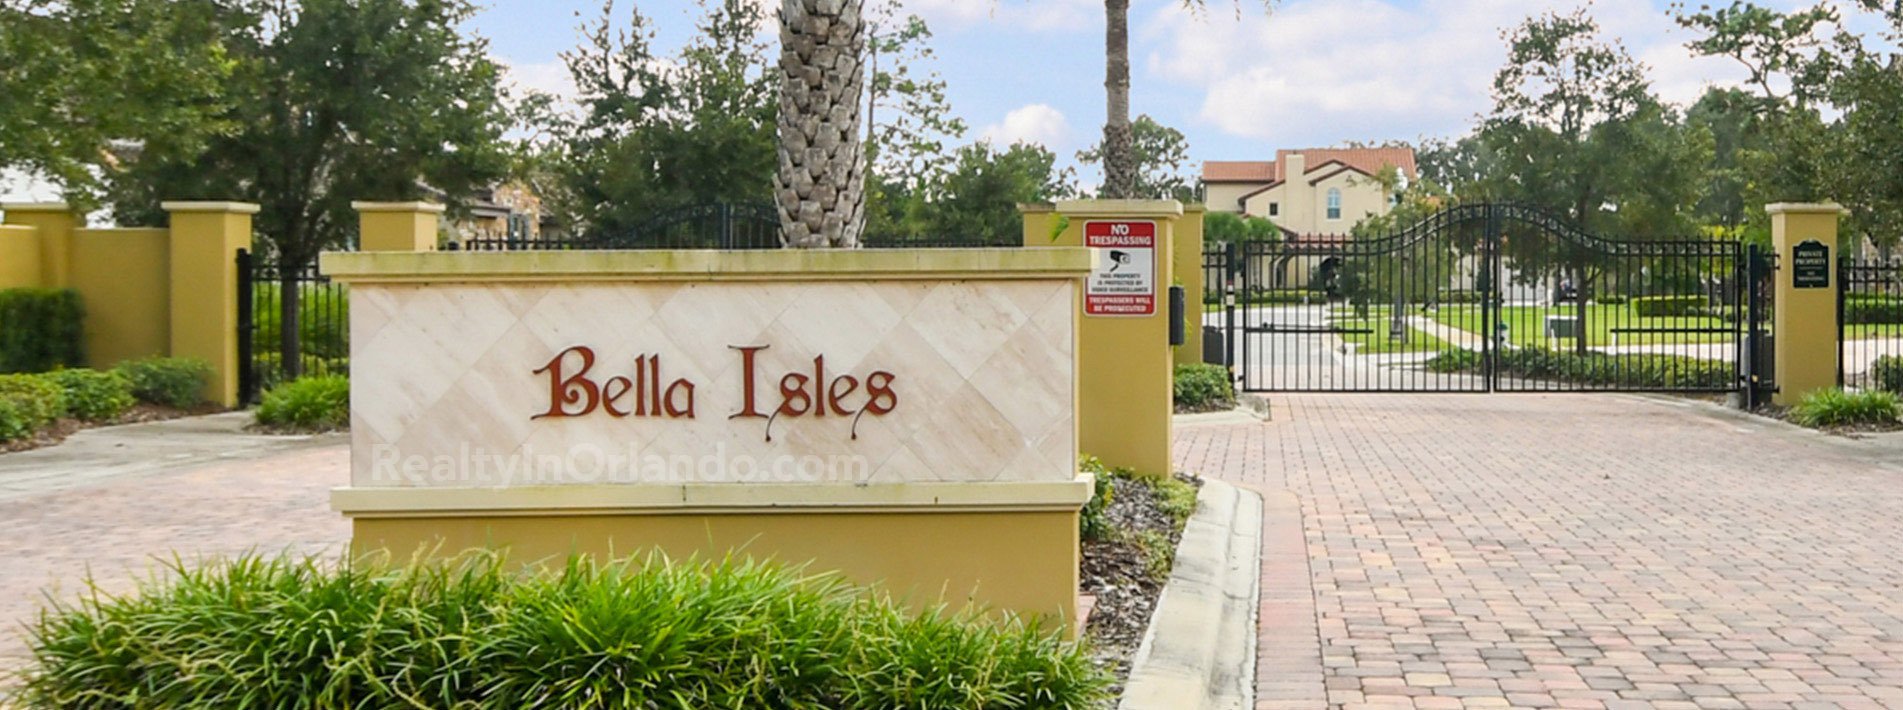 Bella Isles Emerald Homes Orlando